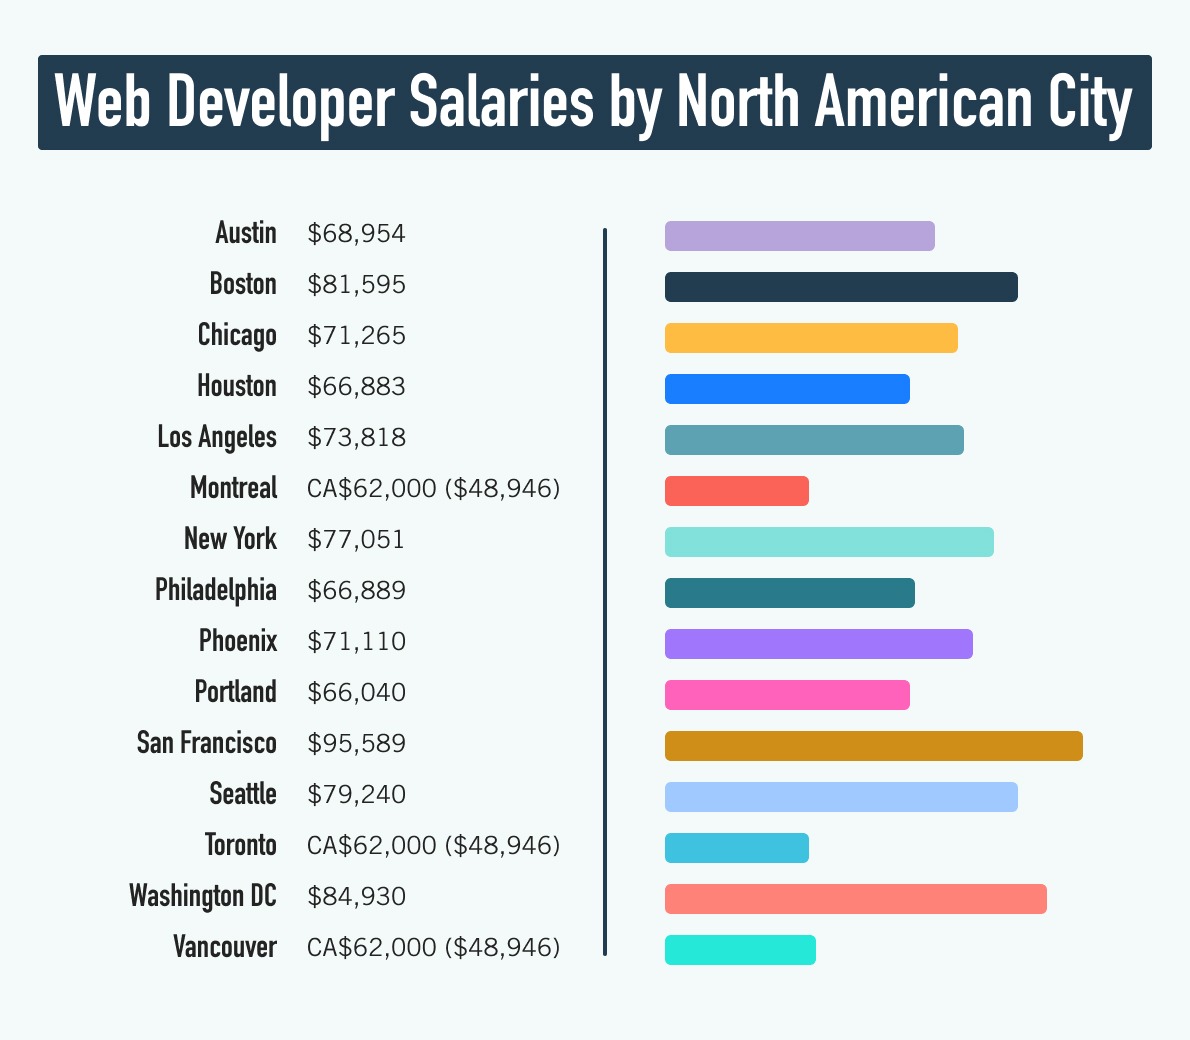 图形比较网络开发者北美城市之间的薪资